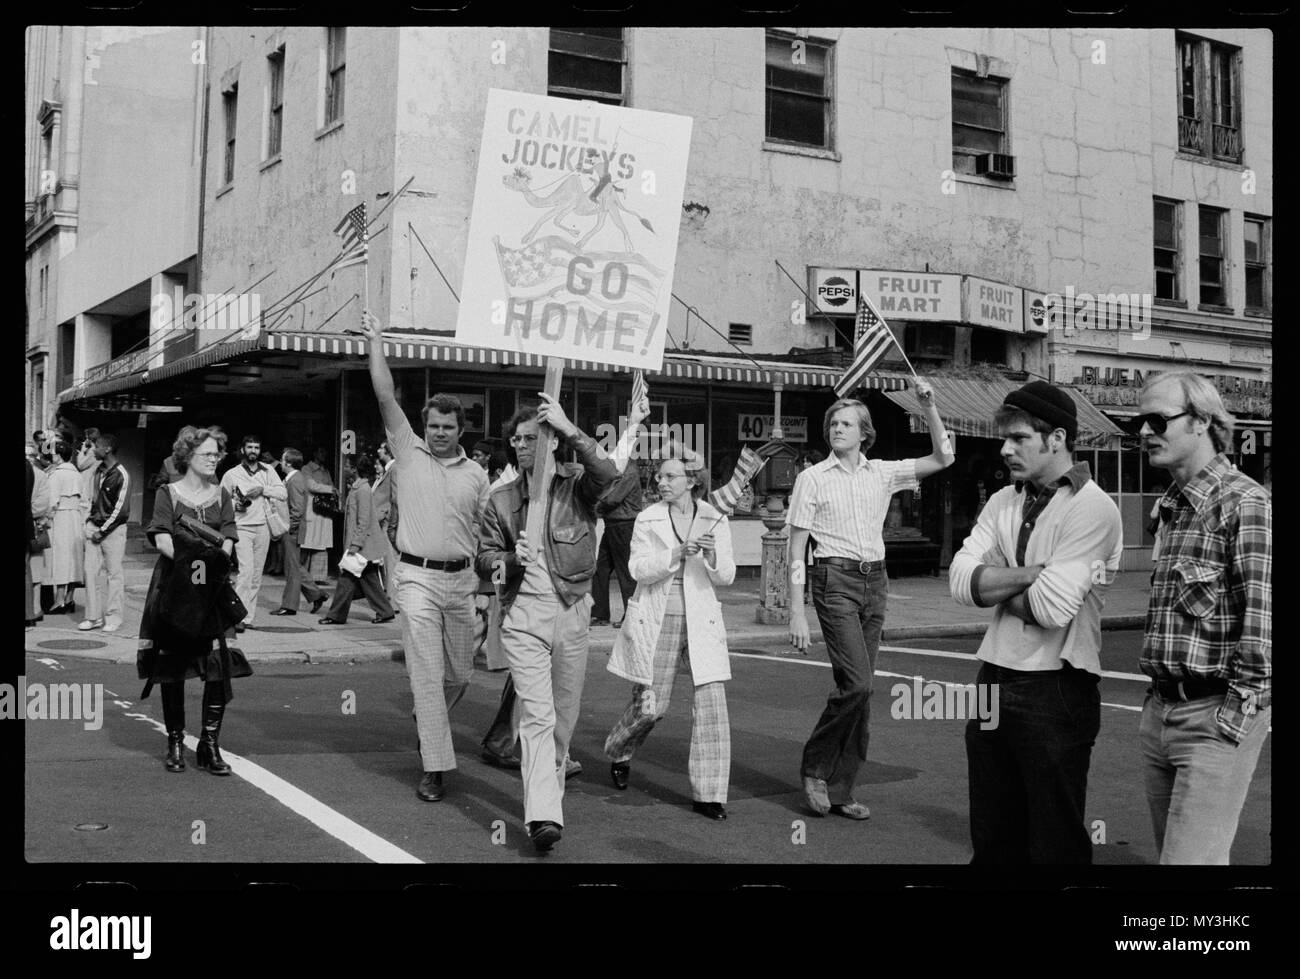 Gli studenti americani esprimono la loro rabbia per le continue crisi Iraniana degli ostaggi, Washington DC, 11/9/1979. Foto di Marion S. Trikosko. Foto Stock